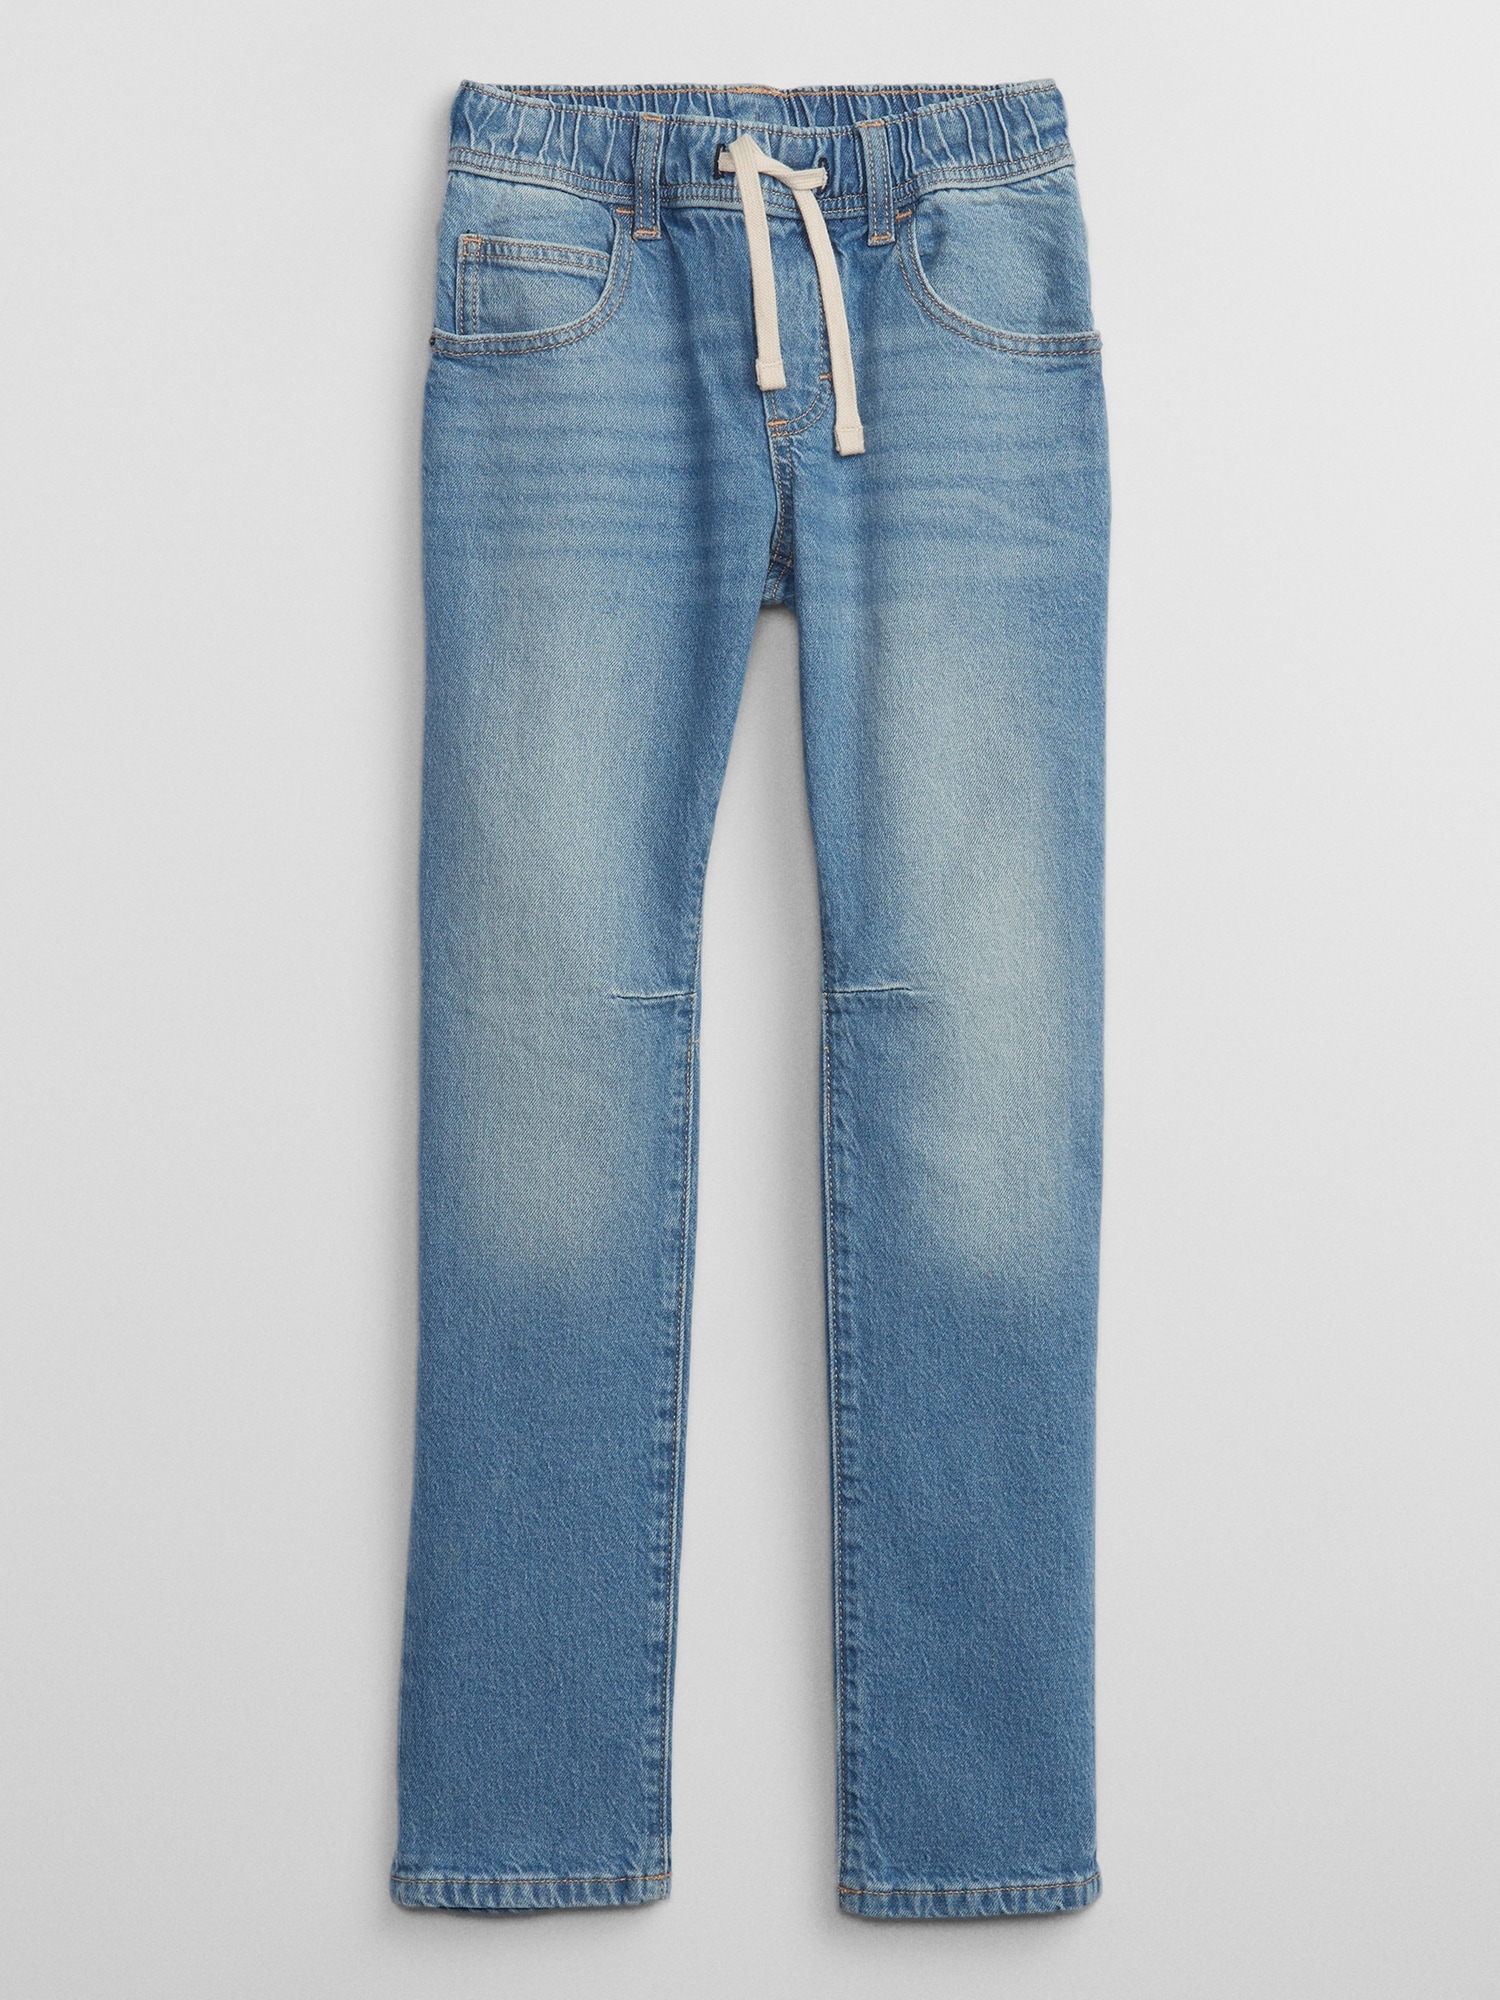 Slimtacular® Straight Leg Pull-On Denim Jeans